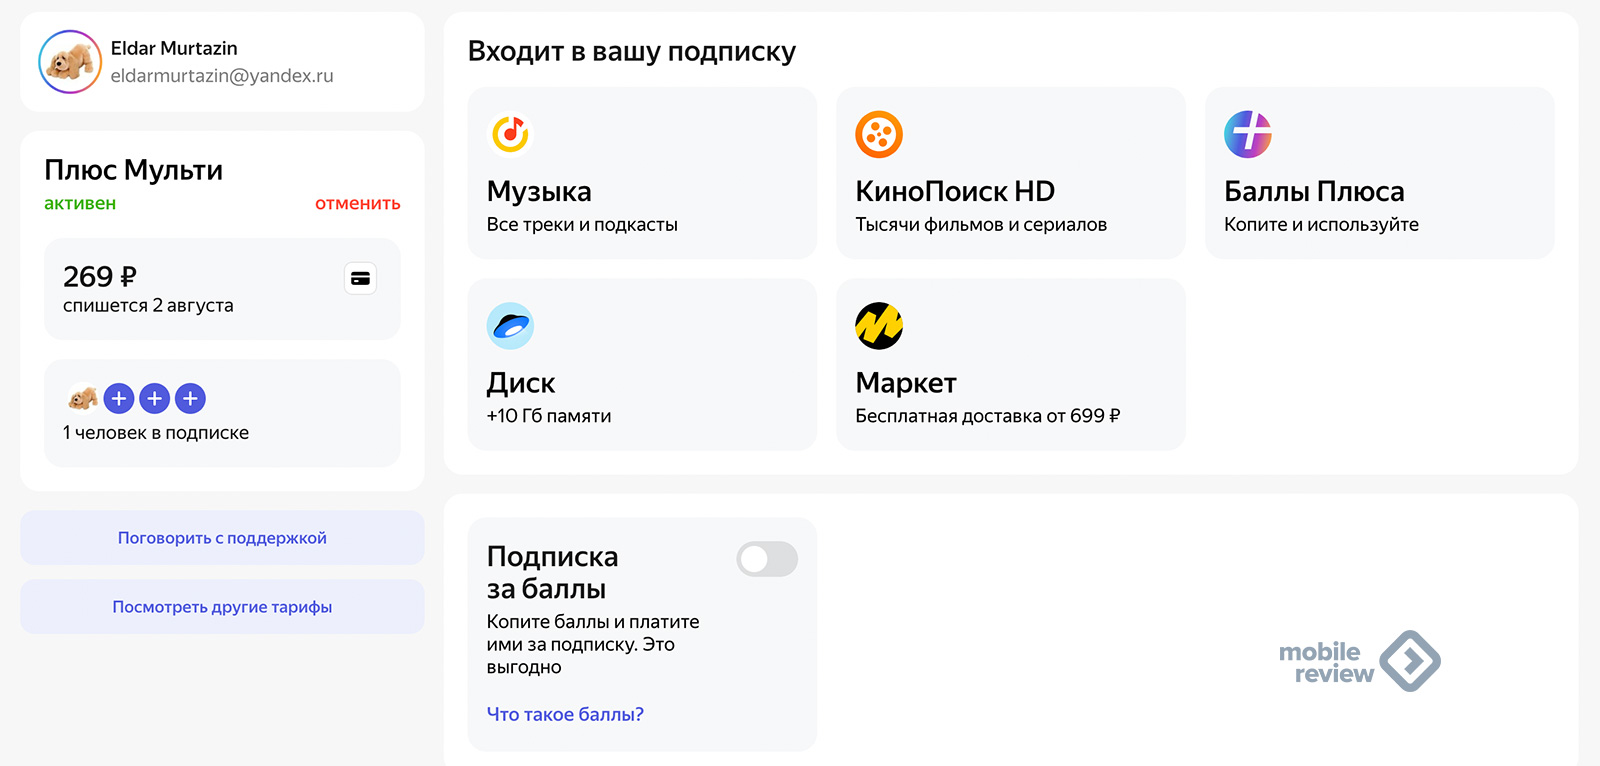 Война российских экосистем. «Яндекс» против «Сбера» плюс другие